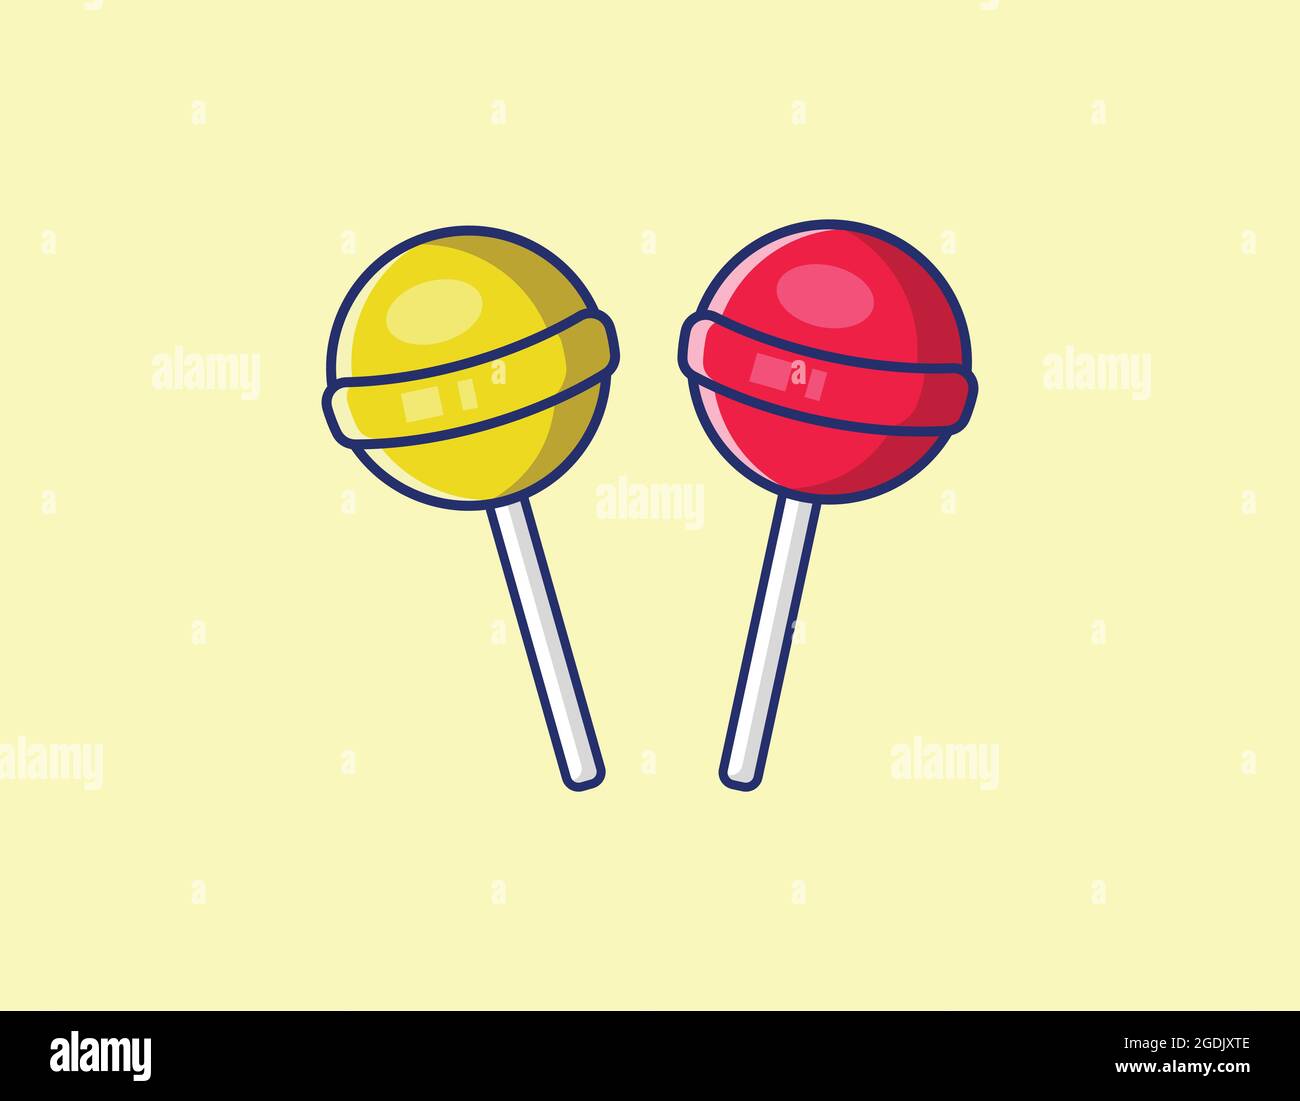 Zwei Süßigkeiten Illustration mit der verschiedenen Farbe rot und gelb, Süßigkeiten Vektor isoliert Stock Vektor